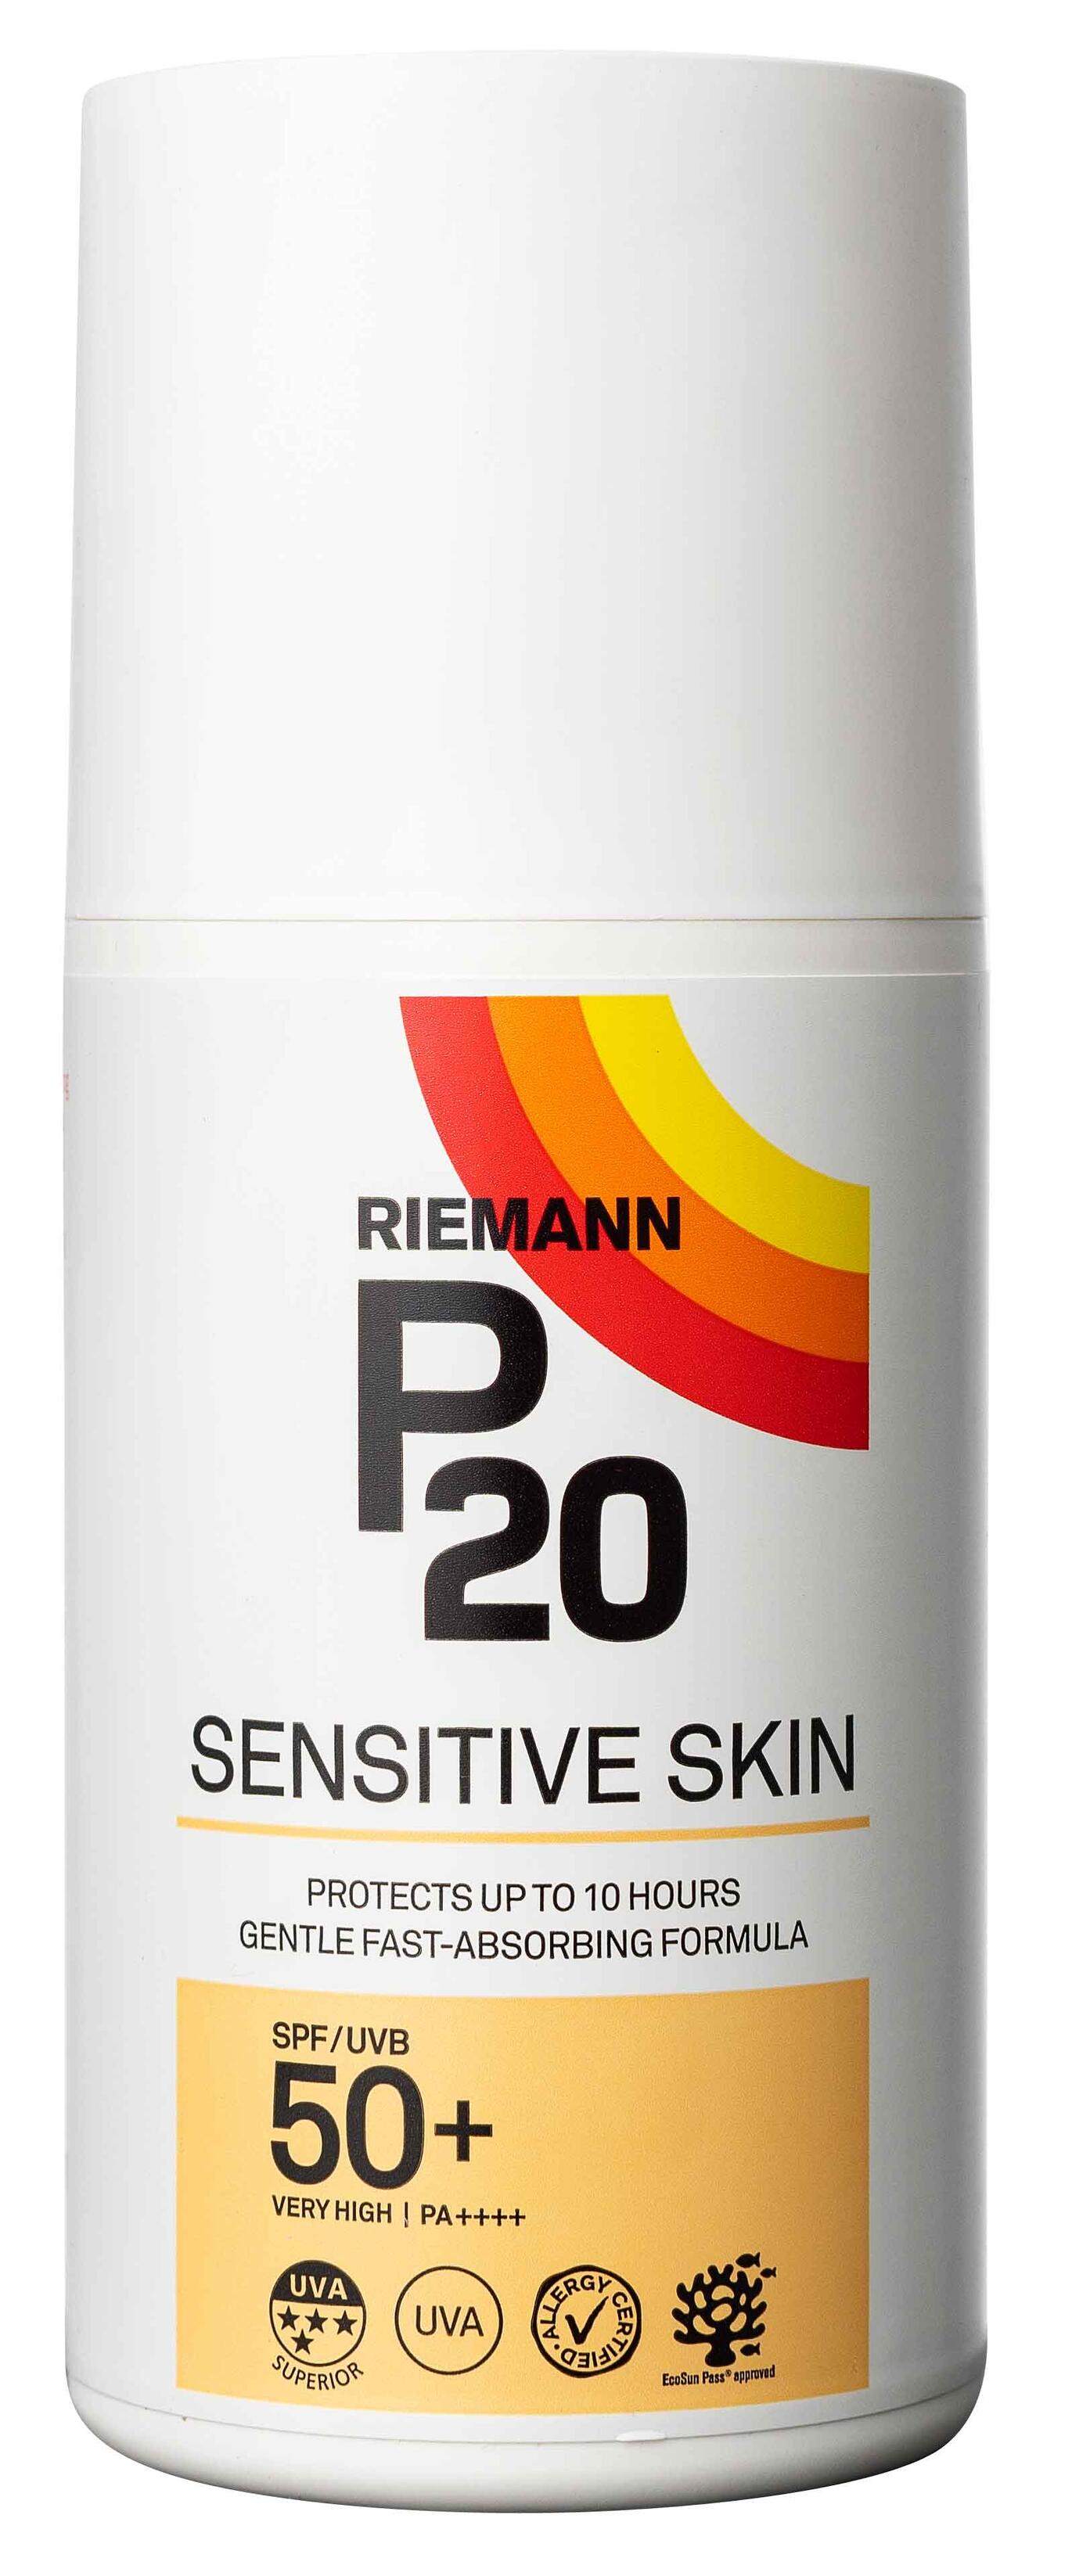 Cream Sensitive skin spf 50+ Riemann P20